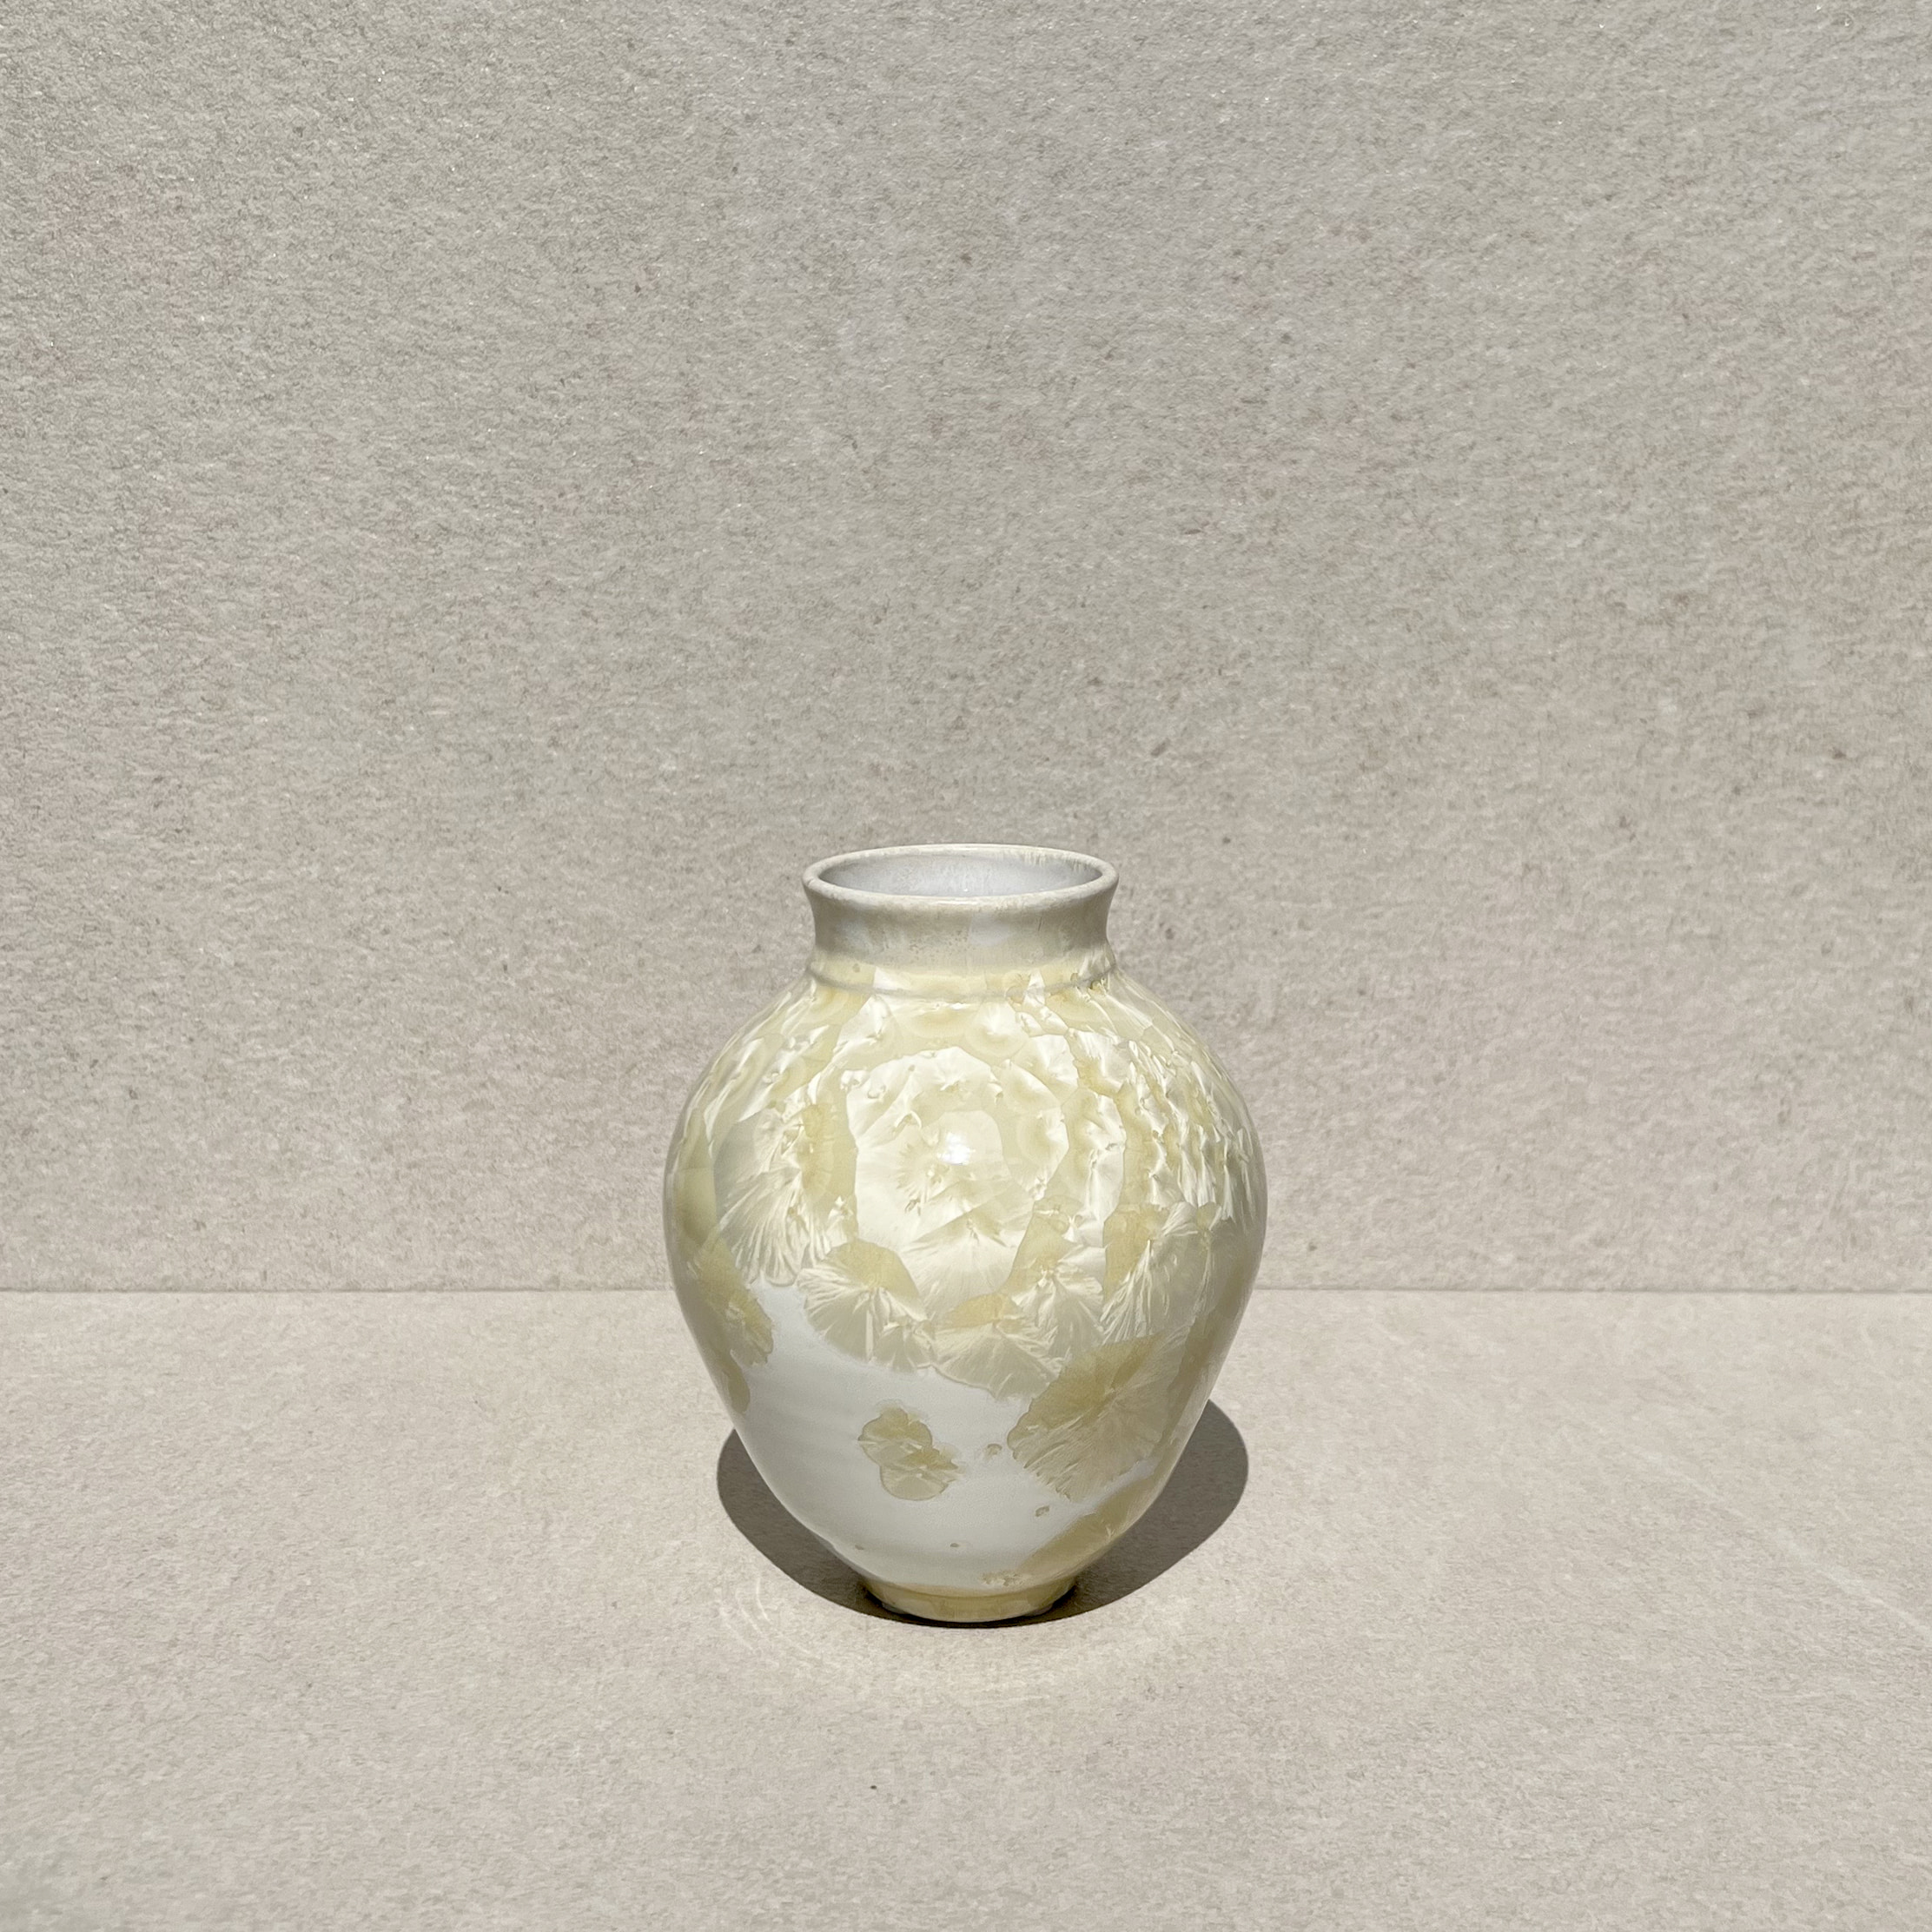 France Cream Art Ceramic Vase 1970s